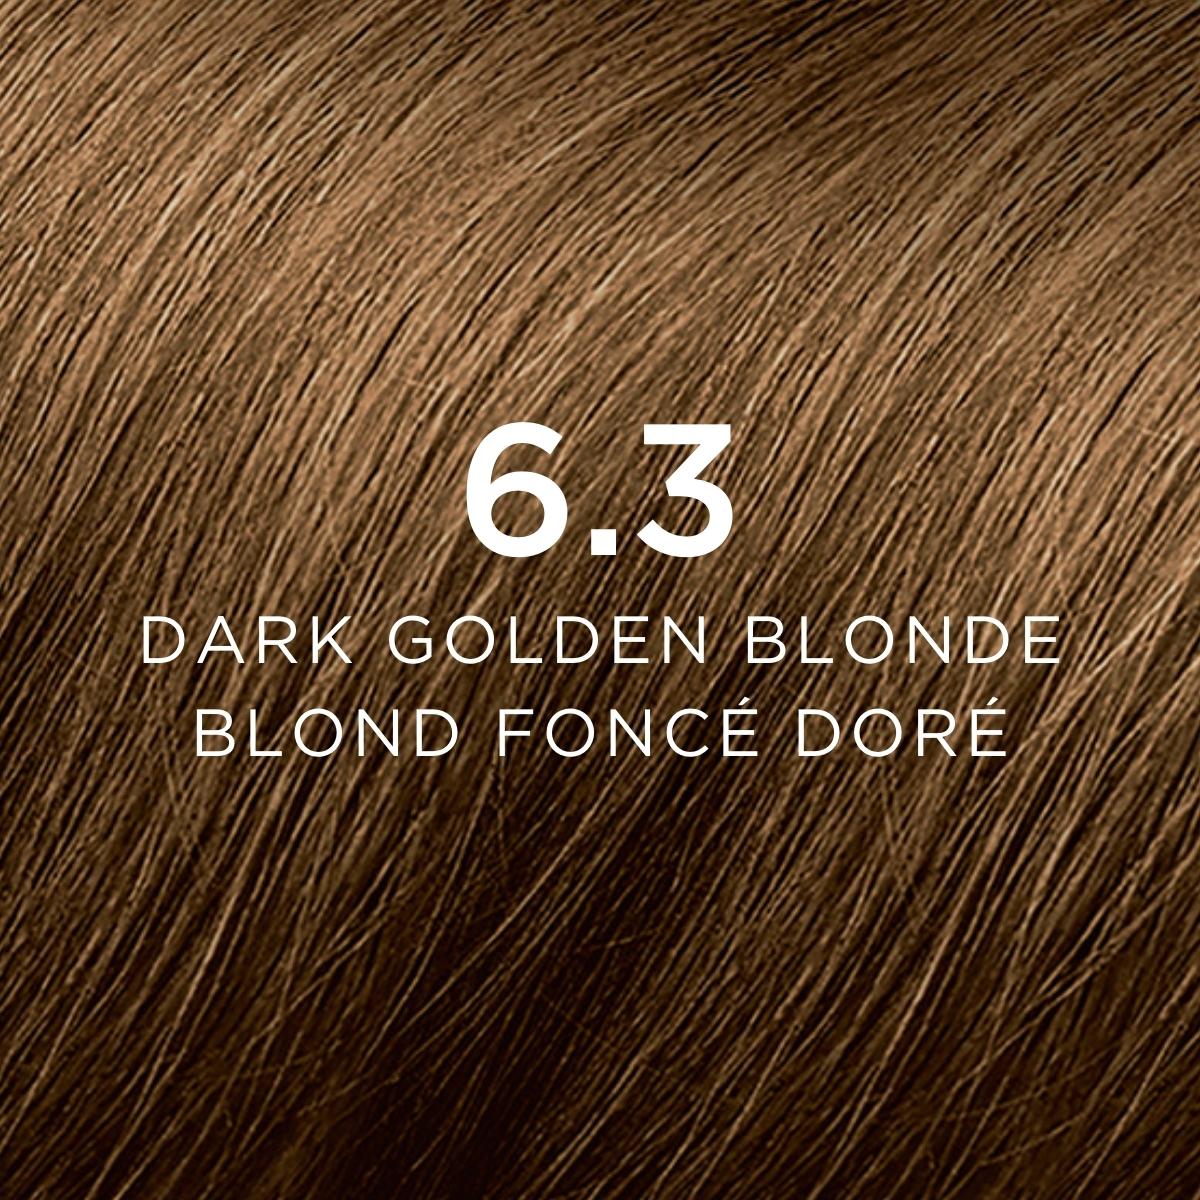 6.3 Blond foncé doré